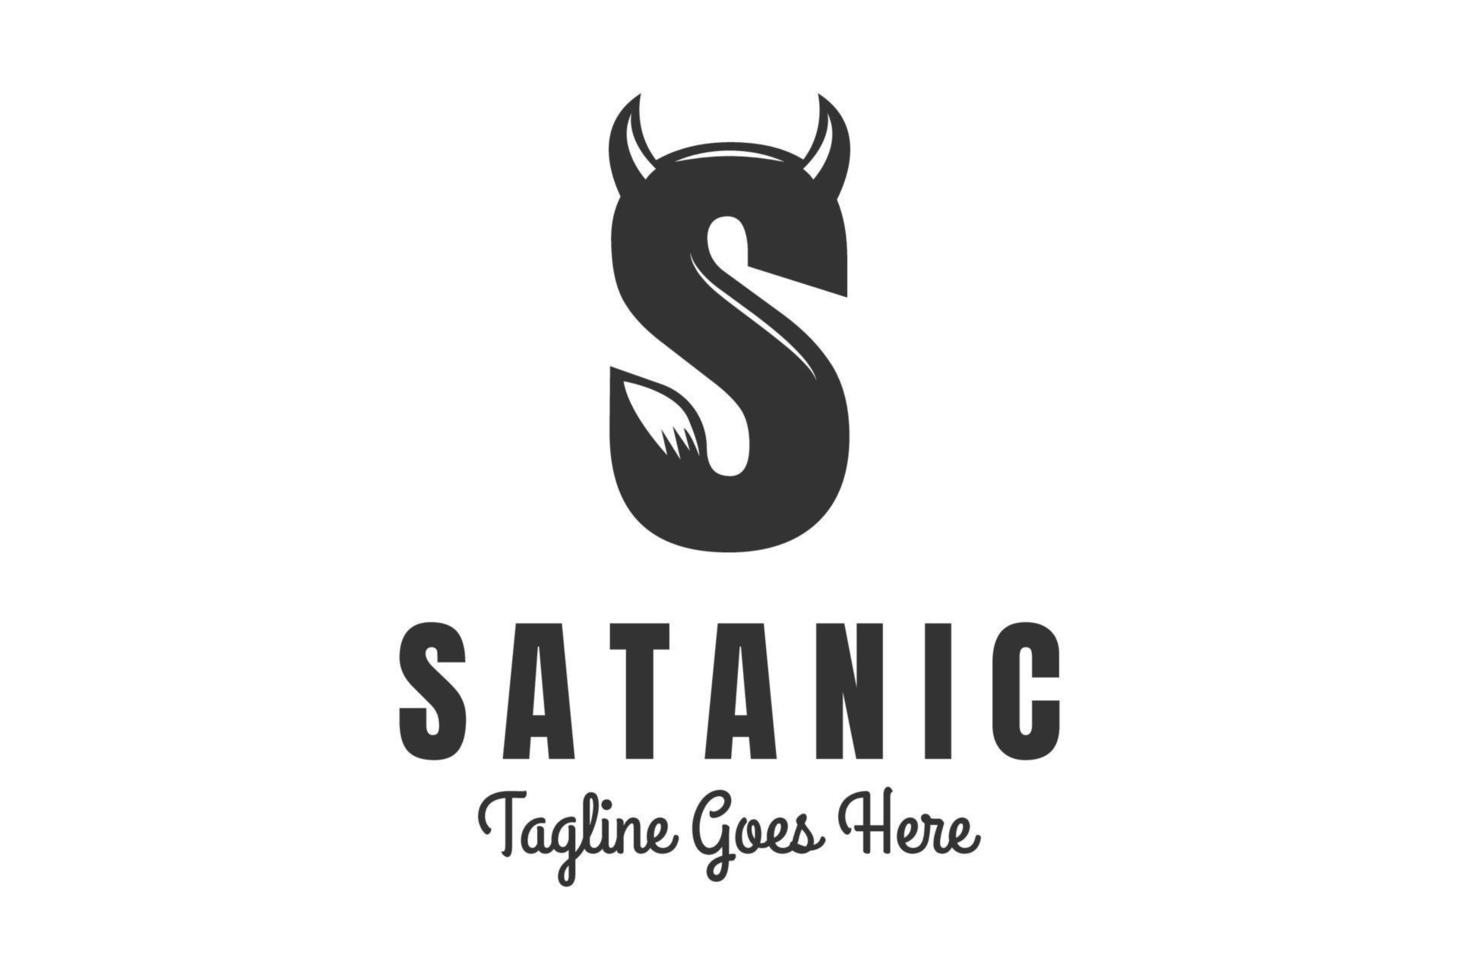 vintage vetgedrukte beginletter s met hoornstaart voor satan satanisch logo-ontwerp vector